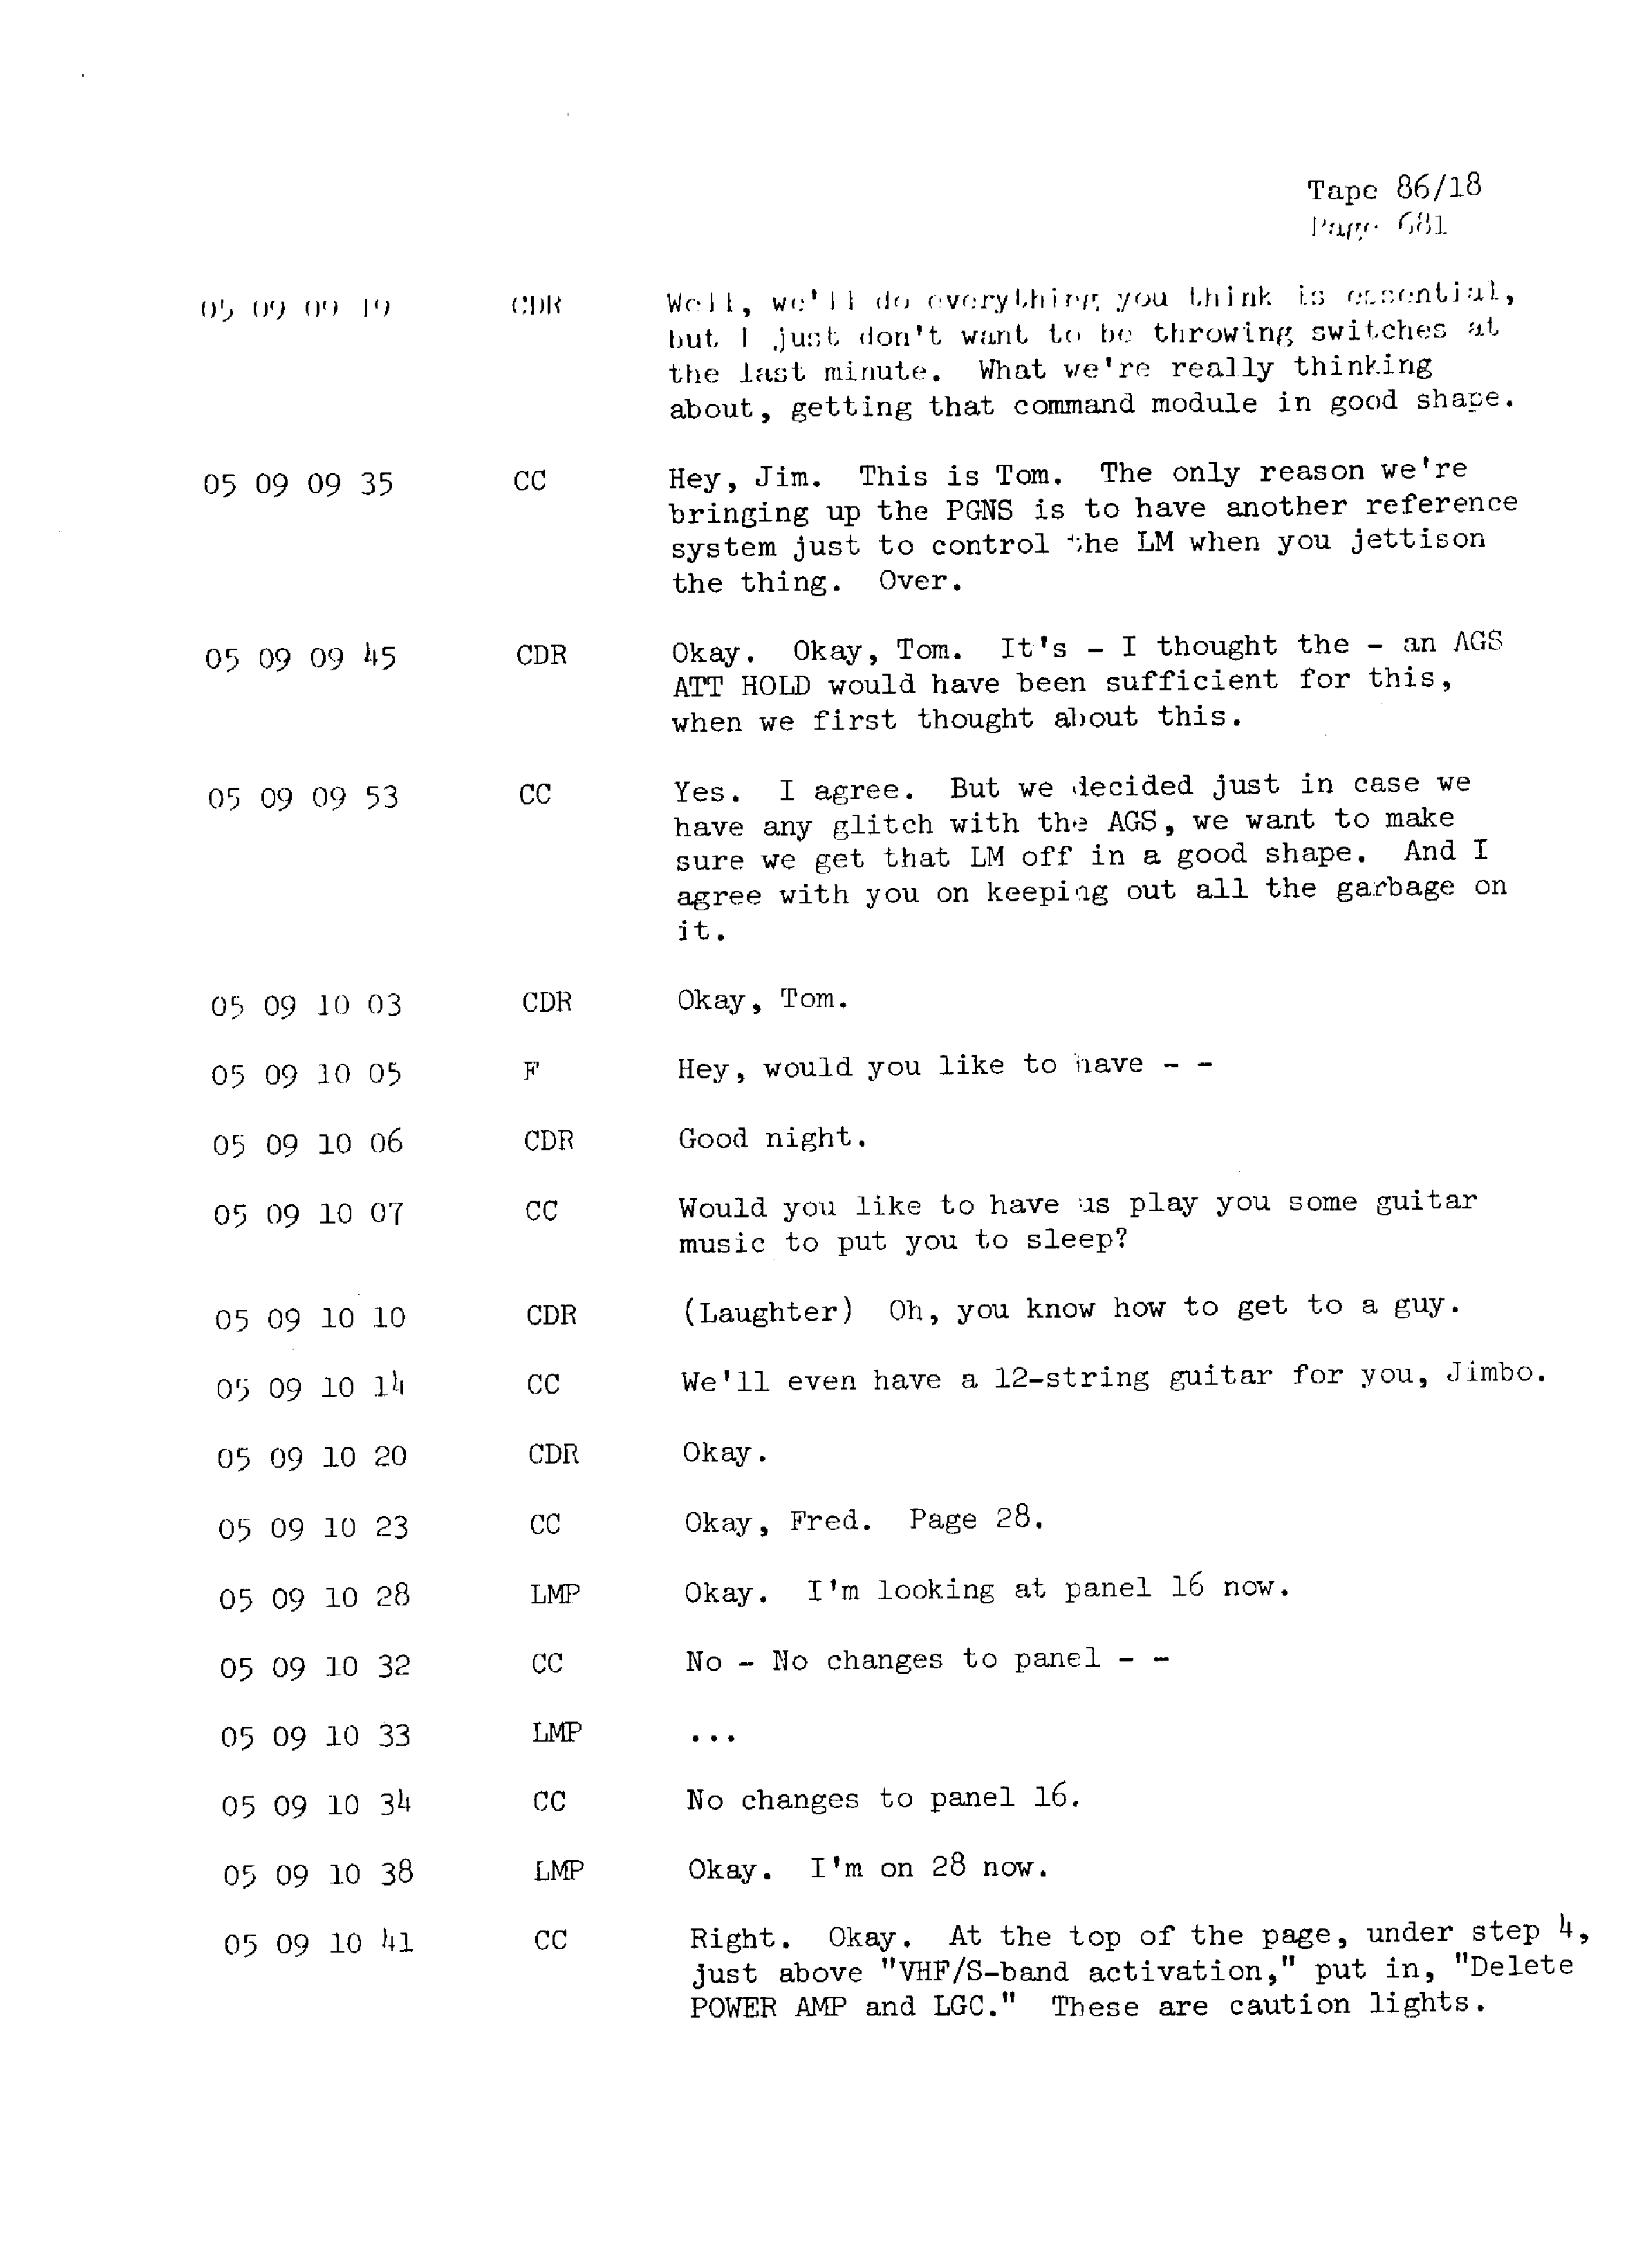 Page 688 of Apollo 13’s original transcript